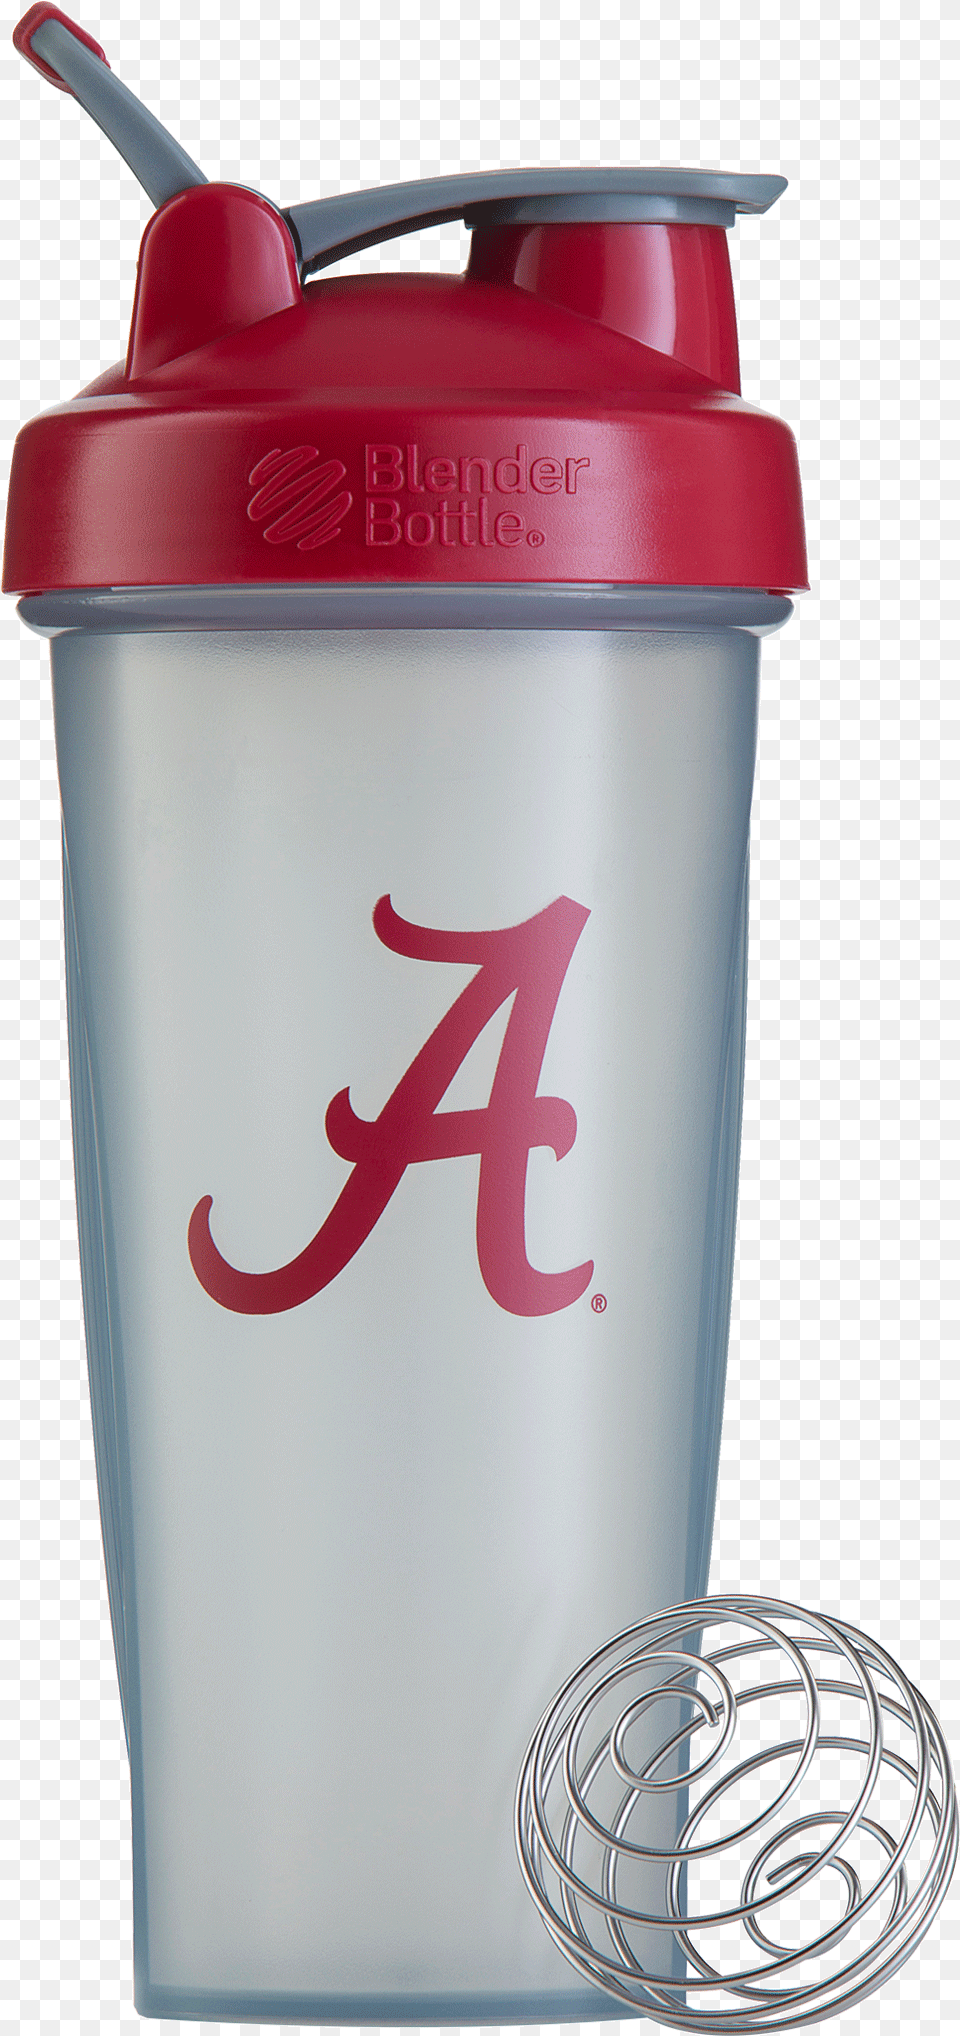 Alabama Crimson Tide, Bottle, Shaker Free Transparent Png